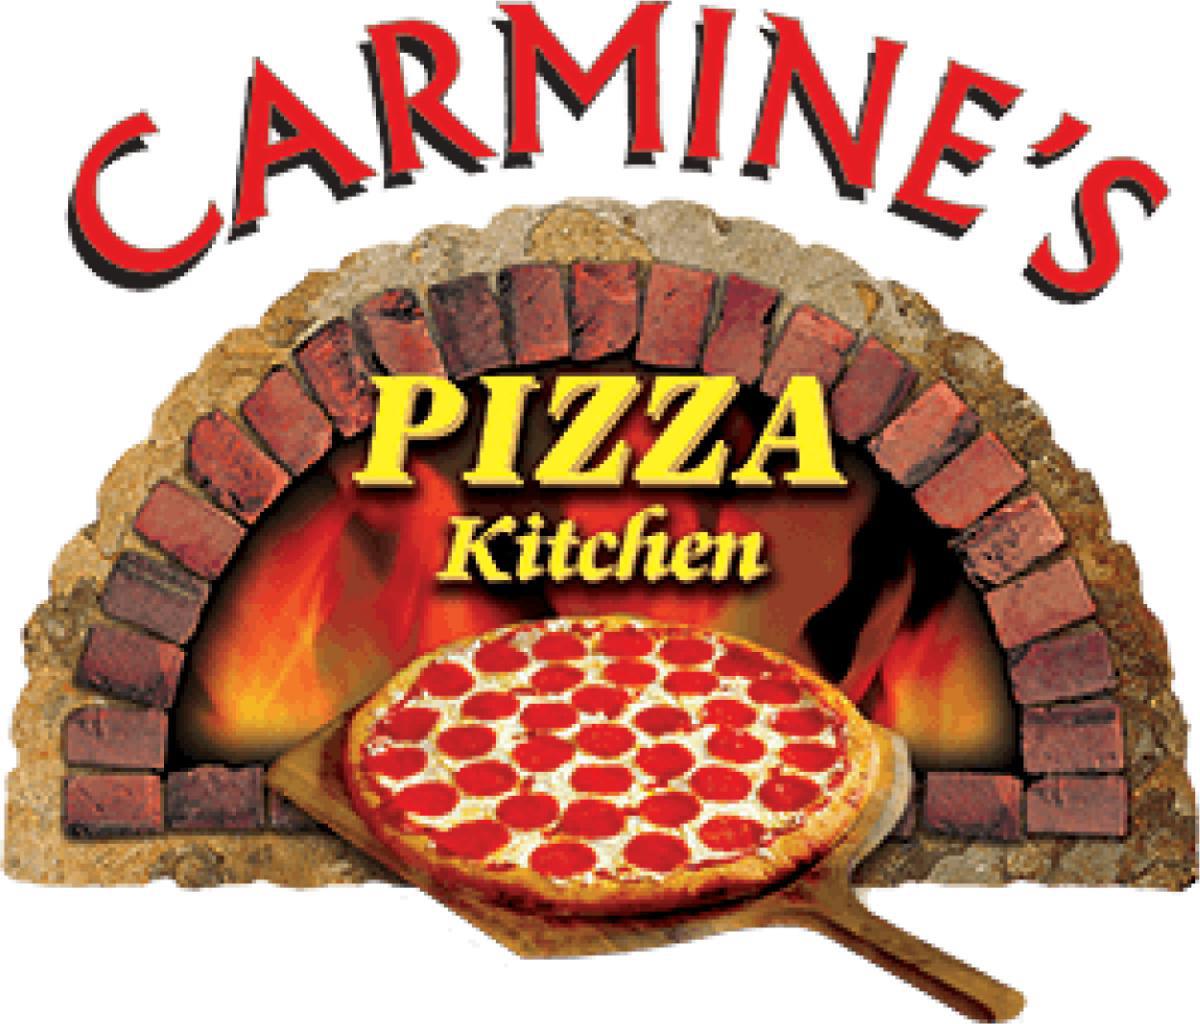 Carmine's Pizza Kitchen @ Raiders Way